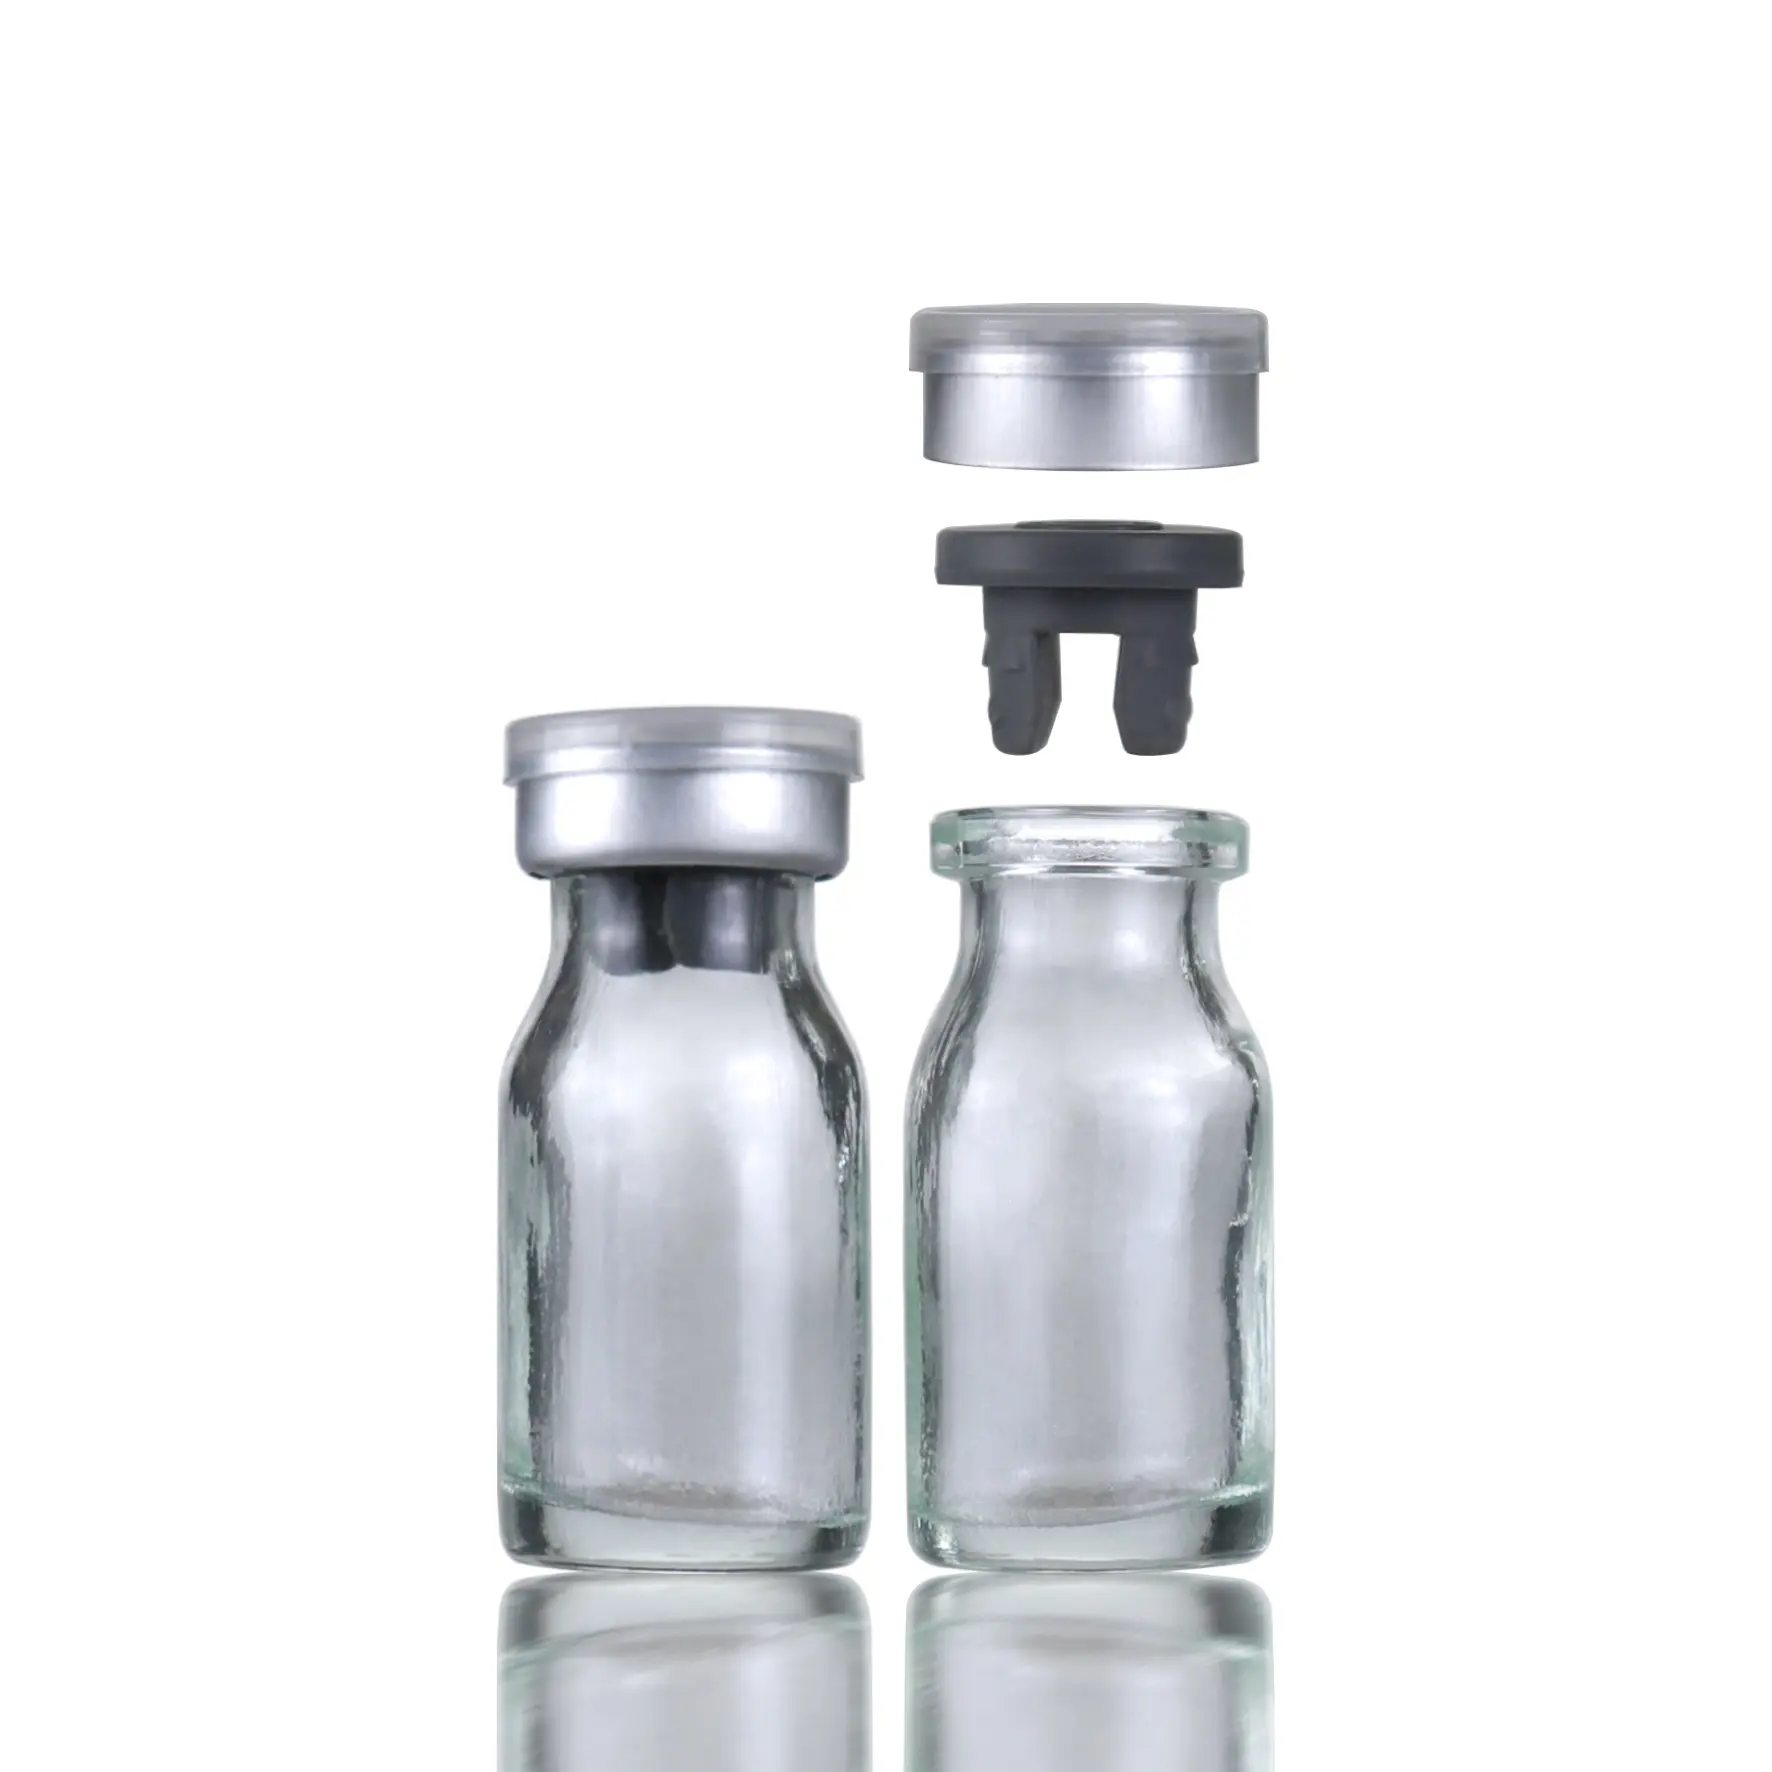 Flacon d'injection en verre épais de 10ml, flacons de médicaments stériles moulés pour les allergènes